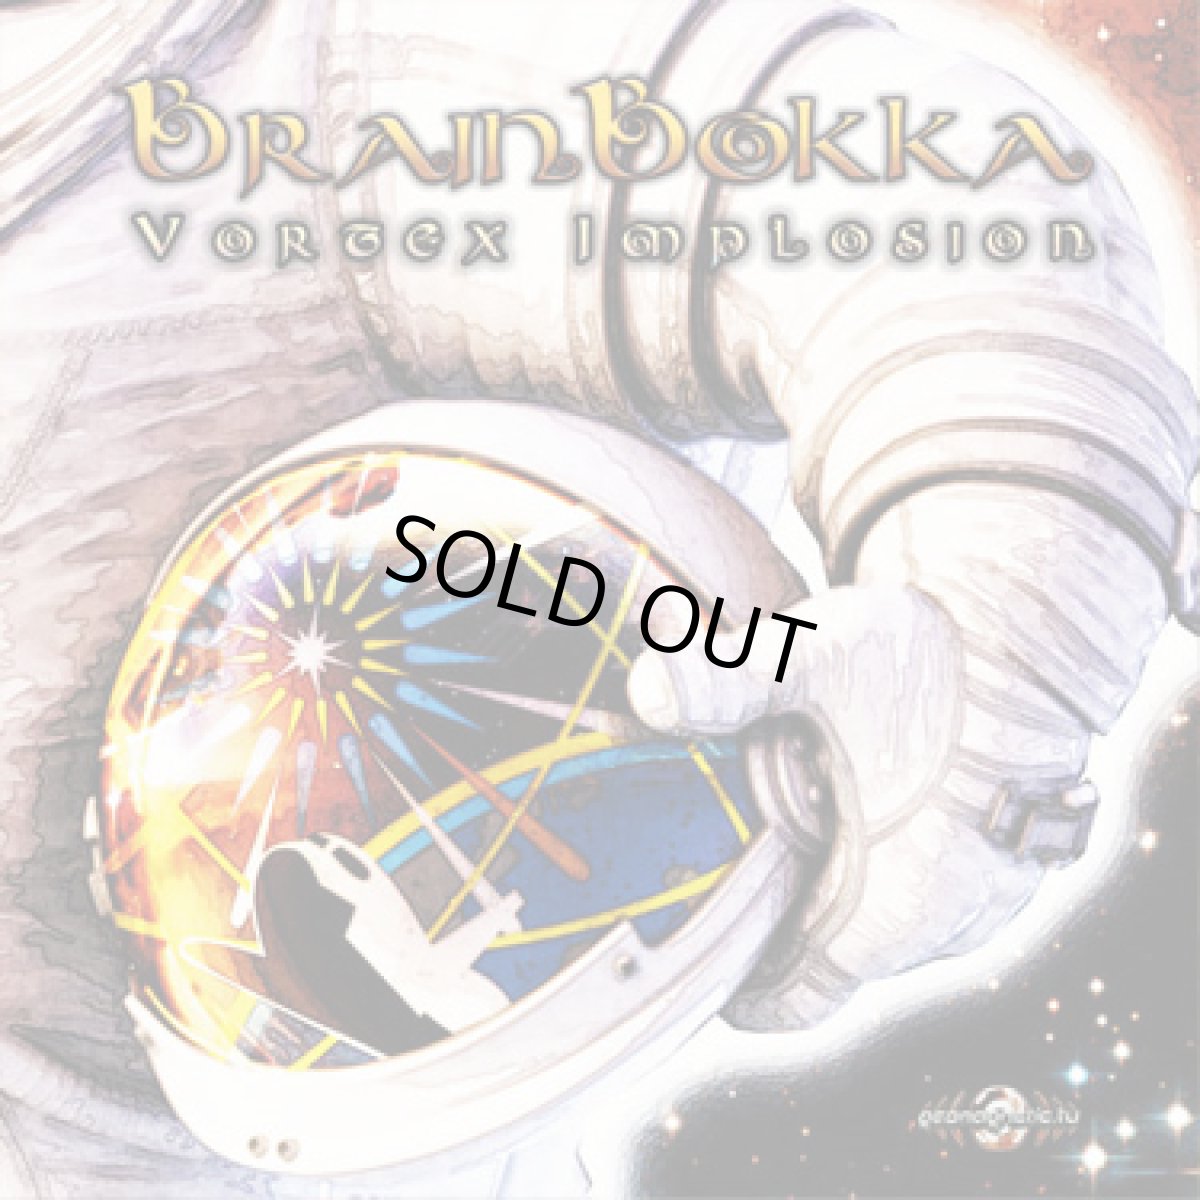 画像1: CD「BrainBokka / Vortex Implosion」【ダークフルオン】 (1)